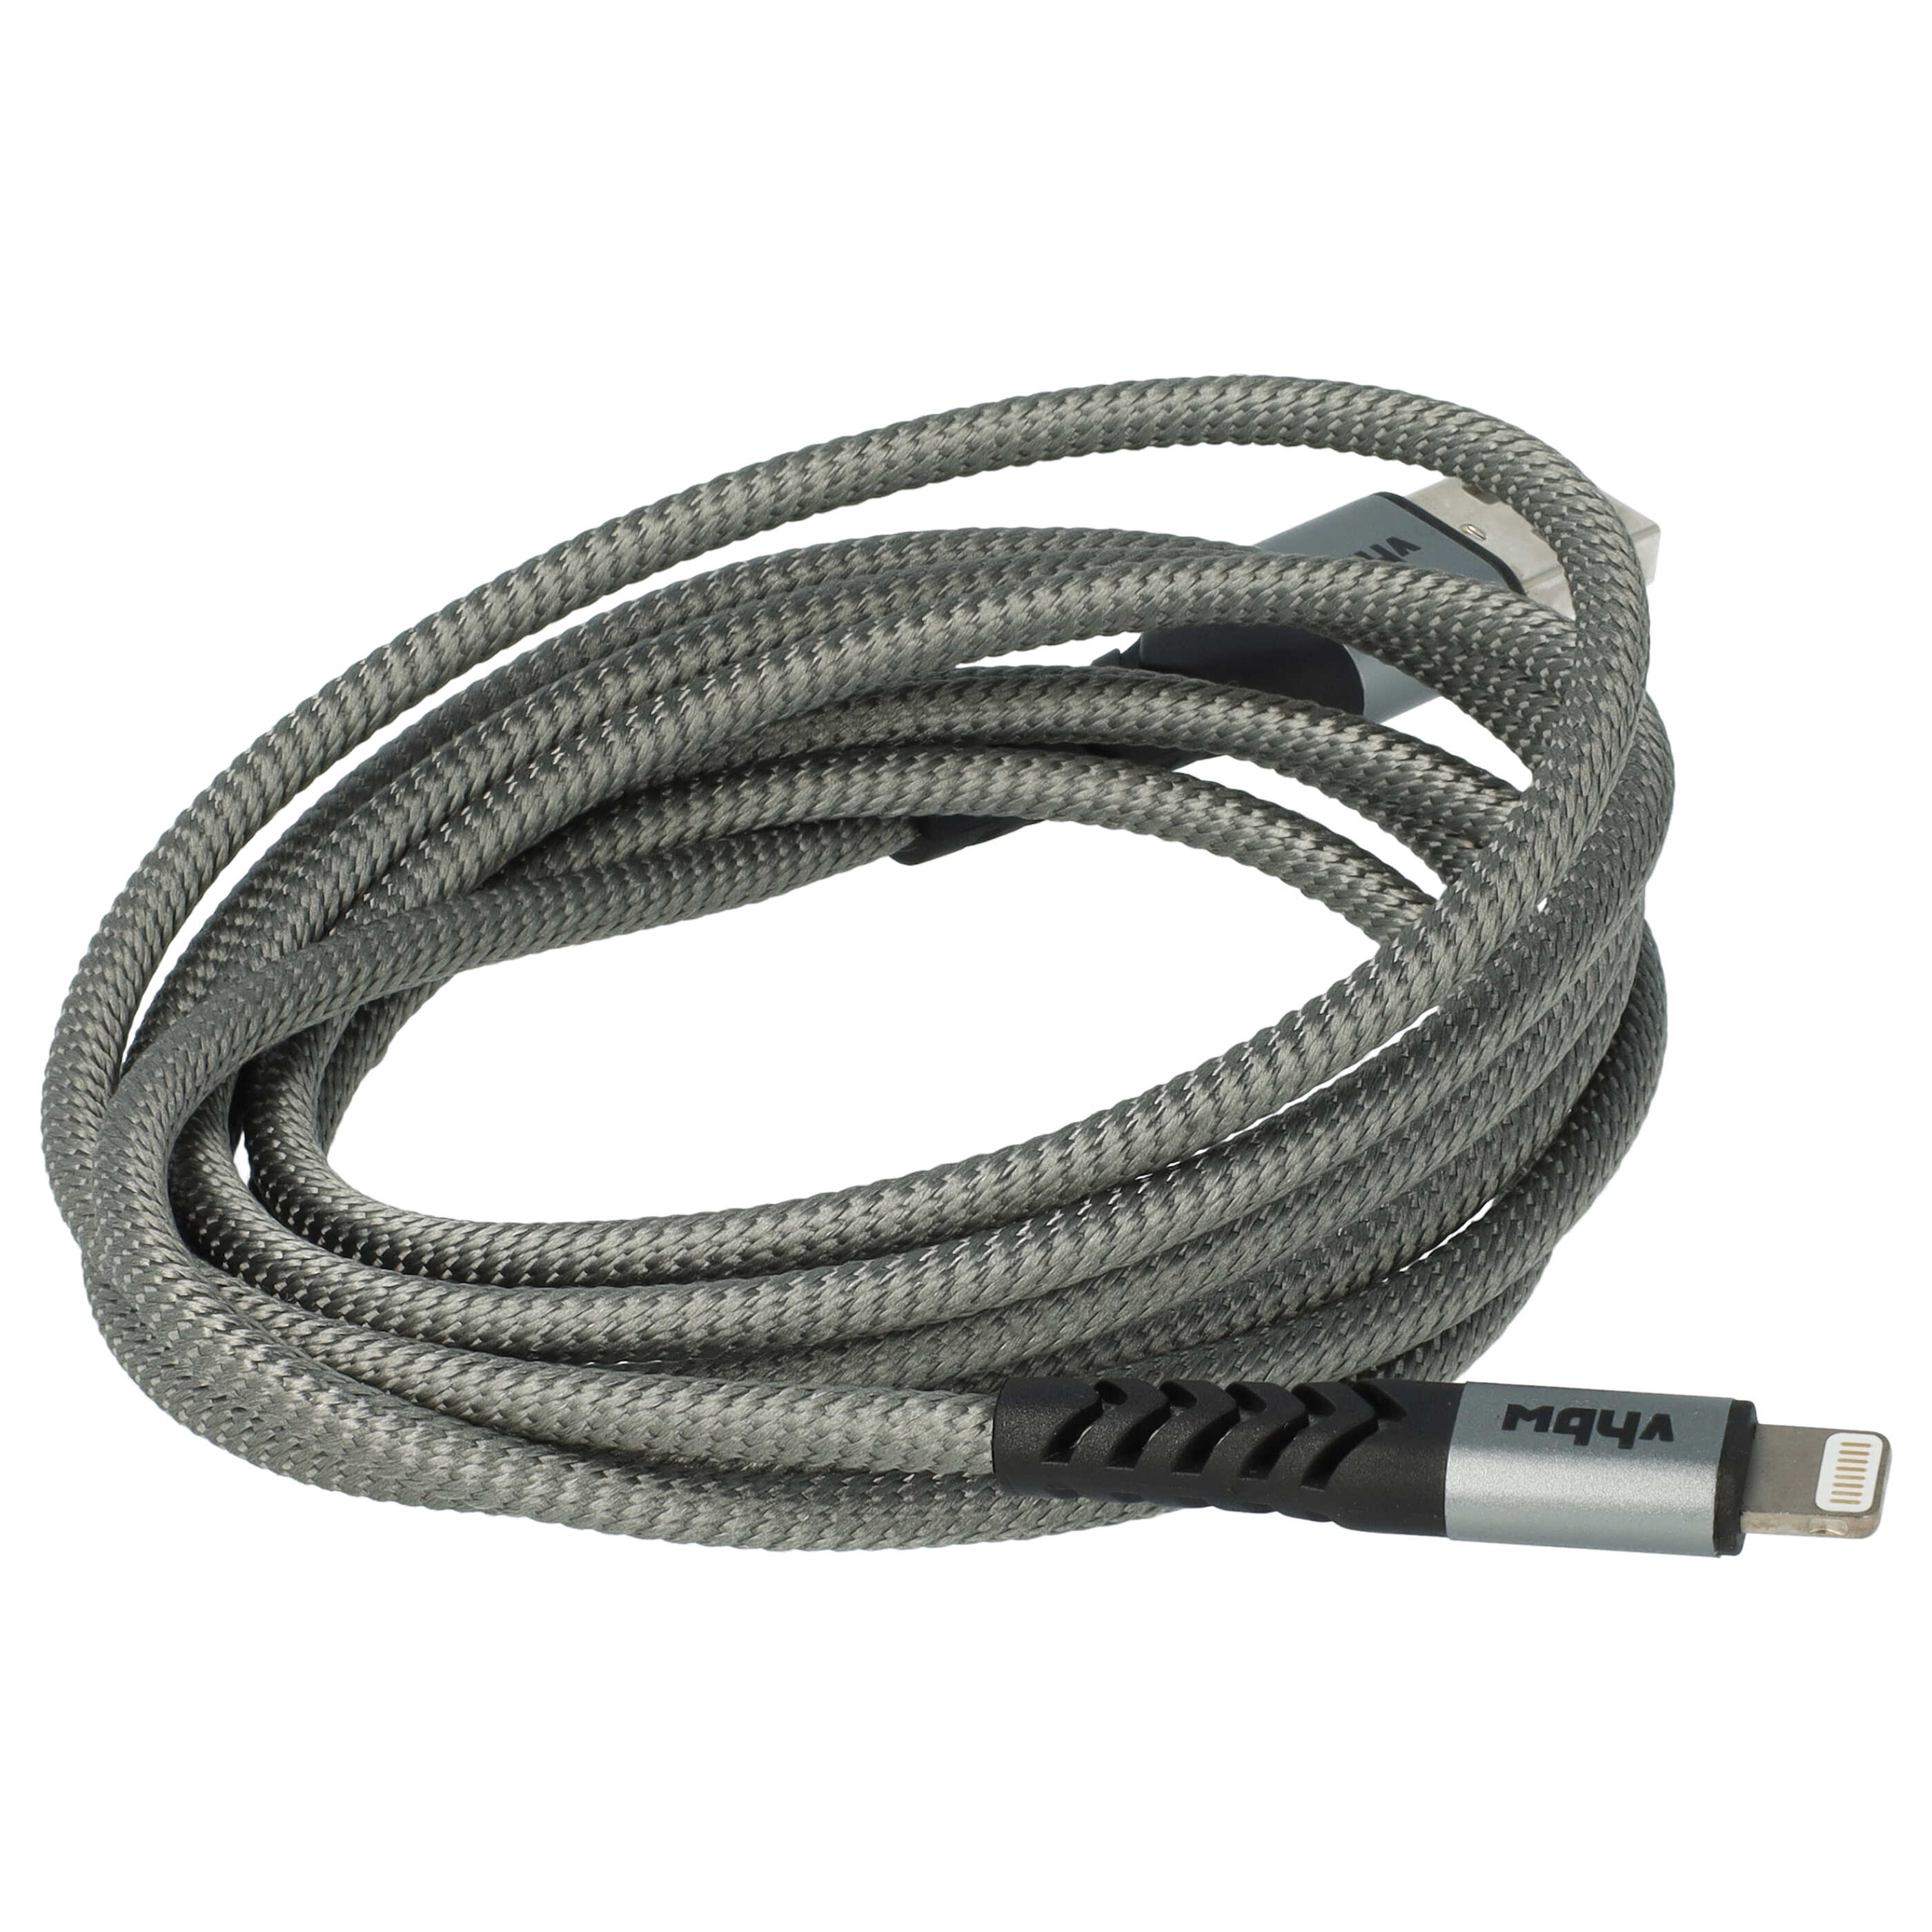 Lightning Kabel auf USB A passend für Apple AirPods Apple iOS Geräte - Schwarz Grau, 180cm